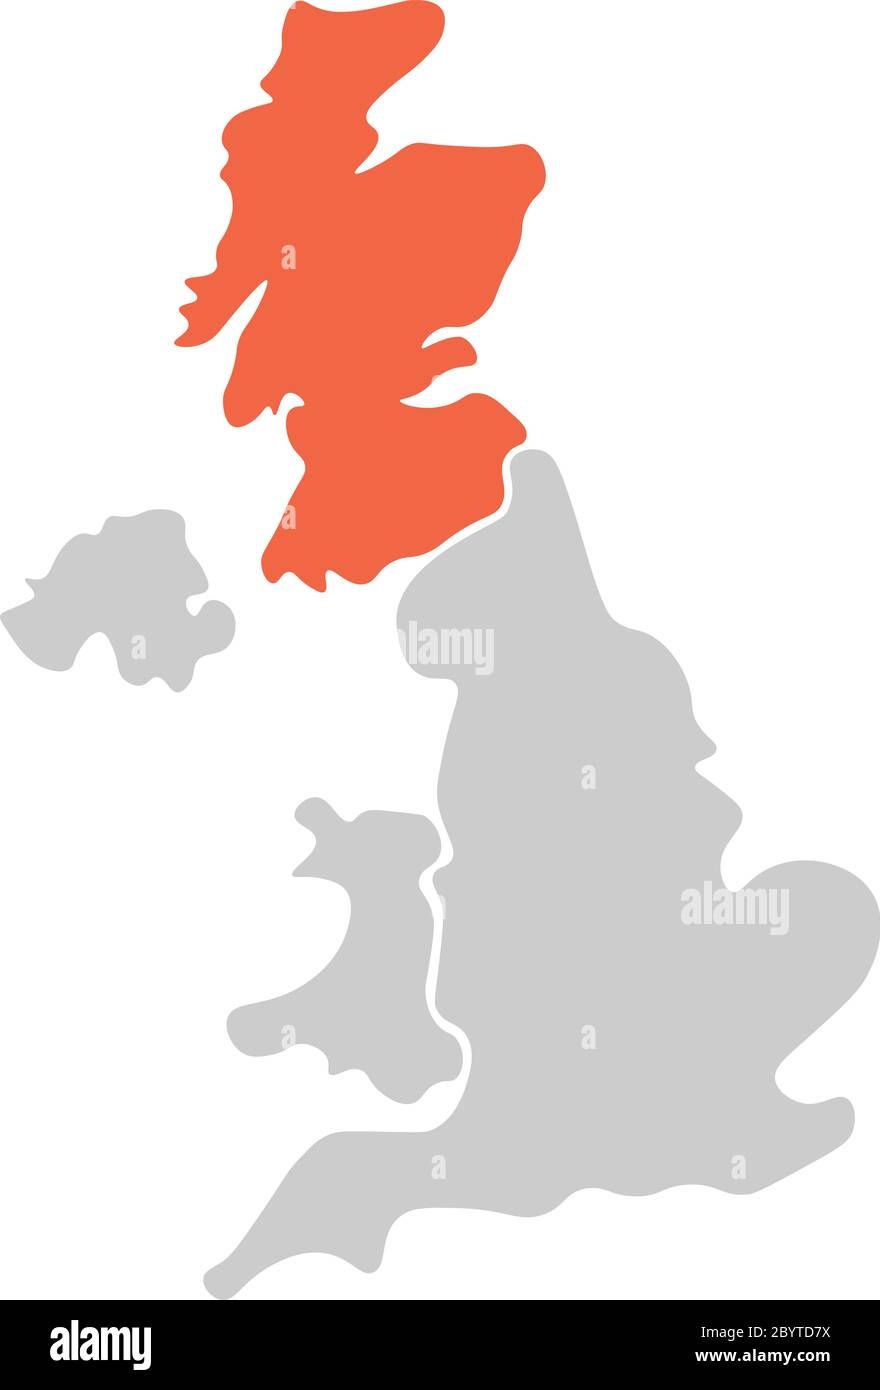 Mappa vuota semplificata disegnata a mano del Regno Unito di Gran Bretagna e Irlanda del Nord, Regno Unito. Diviso in quattro paesi con la Scozia evidenziata in rosso. Semplice illustrazione vettoriale piatta. Illustrazione Vettoriale